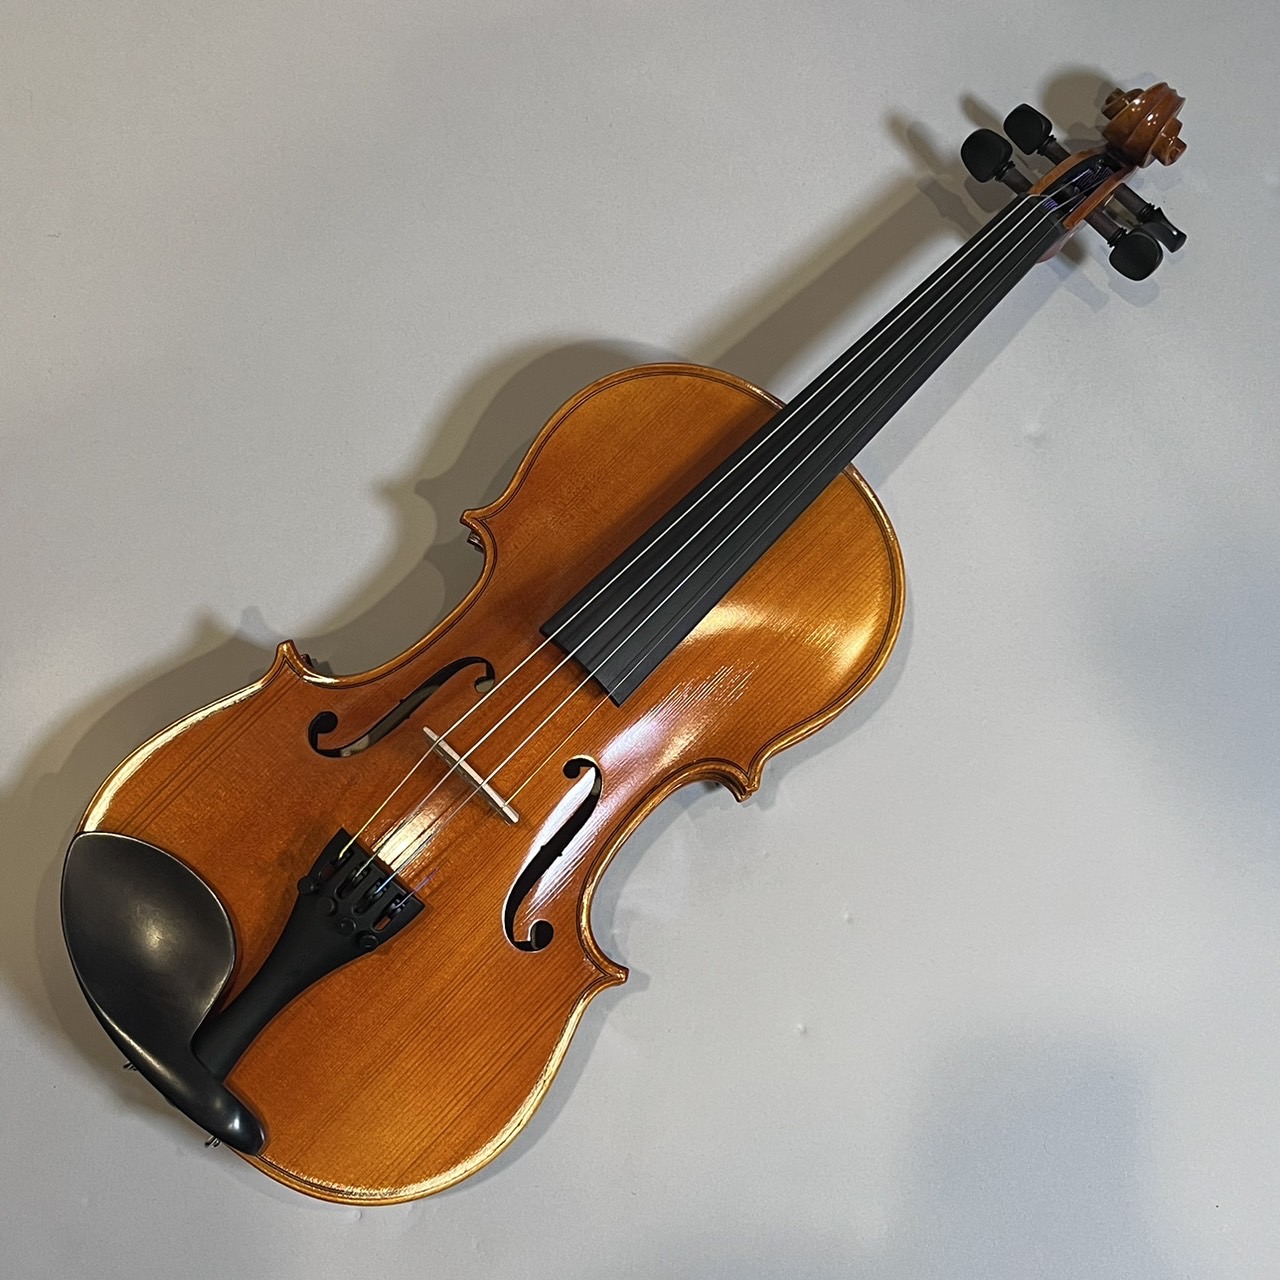 よろしくお願いいたしますSuzuki 1/8 バイオリン - マツヤニ肩当て、弦 